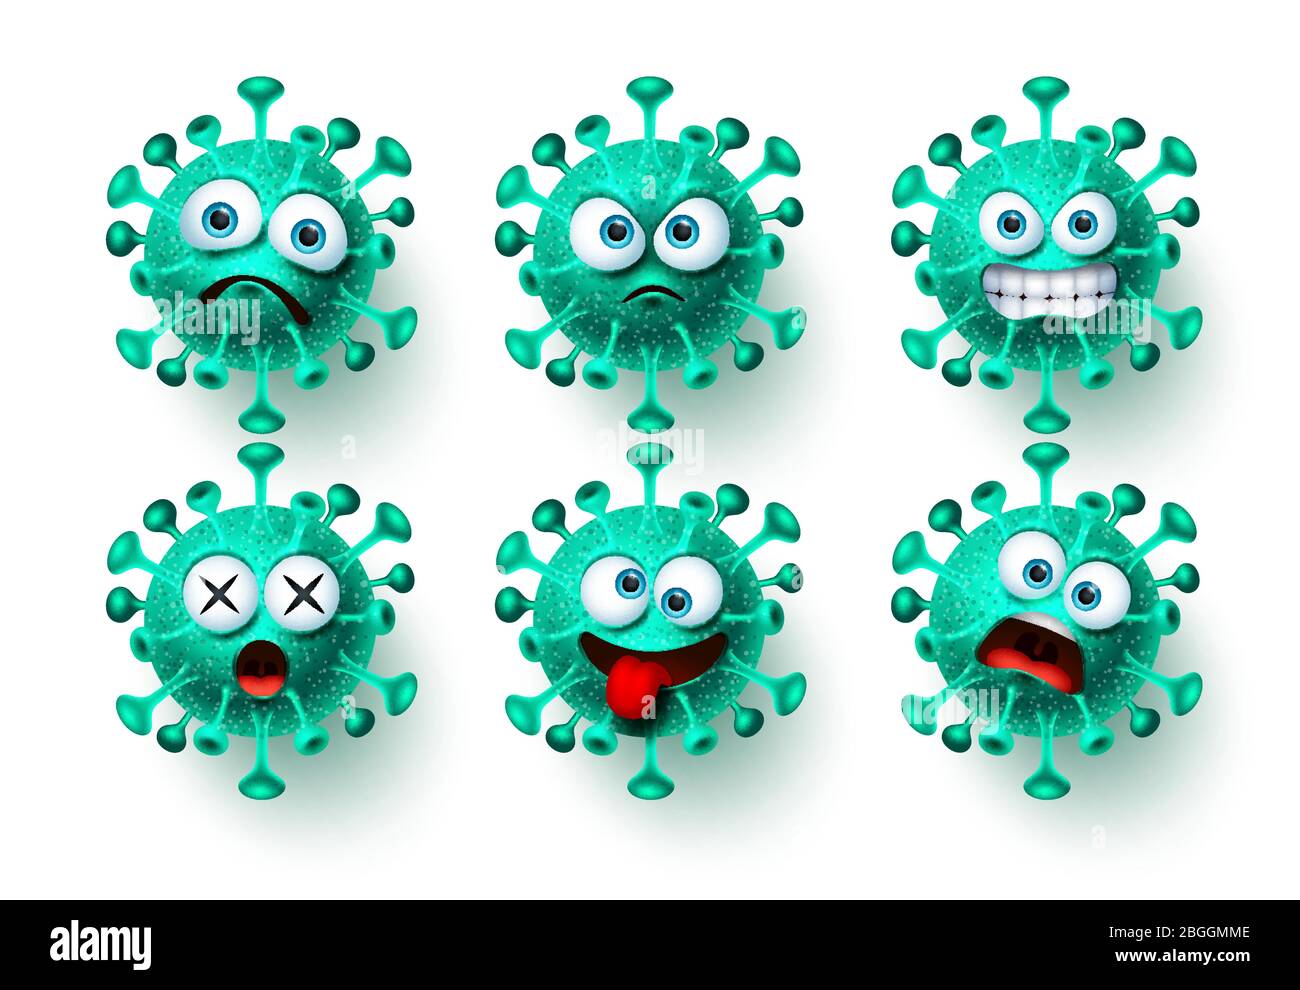 Corona Virus Symbol Vektor gesetzt. NCoV covid19 Corona Virus Emoticon und Emoji mit gruseligen und wütenden Gesichtsausdrücken für globale Pandemie. Stock Vektor